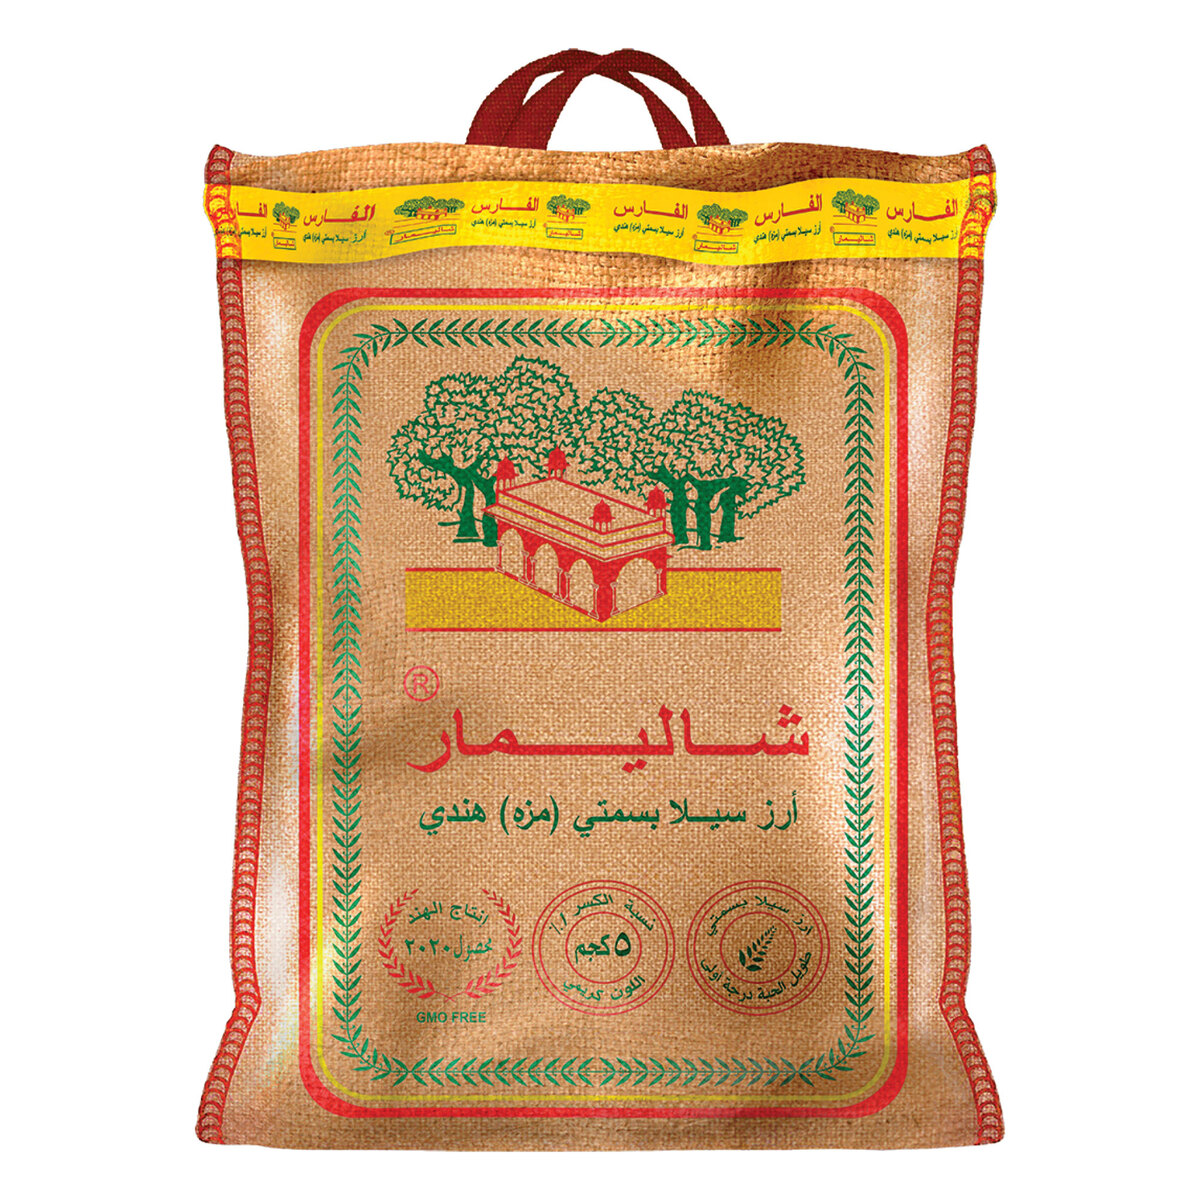 اشتري قم بشراء شاليمار أرز بسمتي سيلا الهندي 5 كجم Online at Best Price من الموقع - من لولو هايبر ماركت  بسمتي في السعودية